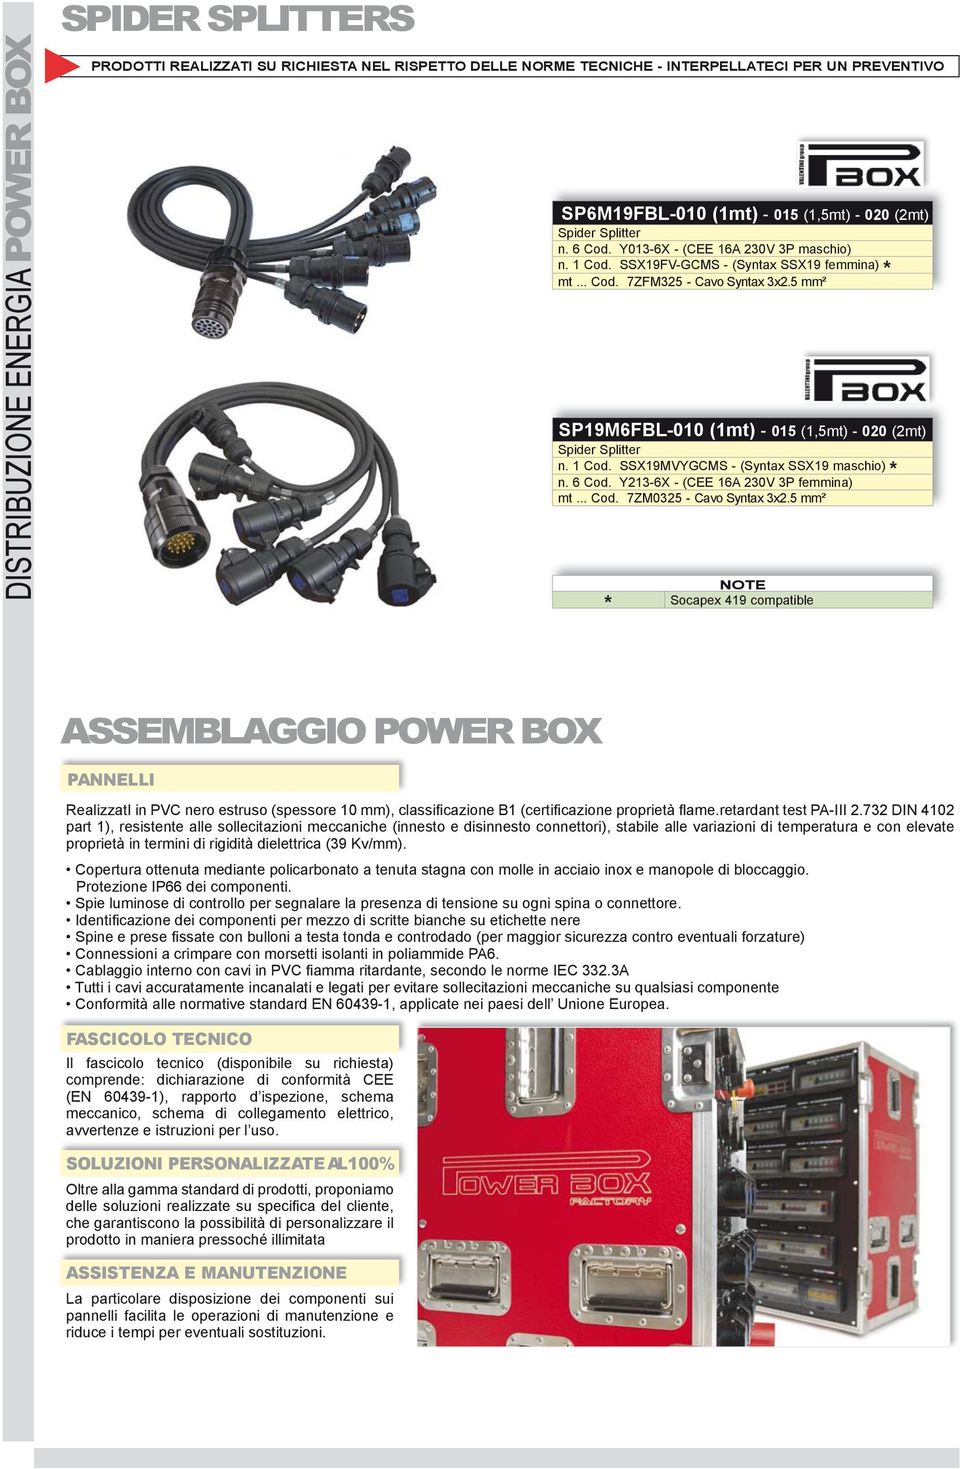 5 mm² Socapex 419 compatible ASSEMBLAGGIO POWER BOX PANNELLI RealizzatI in PVC nero estruso (spessore 10 mm), classificazione B1 (certifi cazione proprietà fl ame.retardant test PA-III 2.